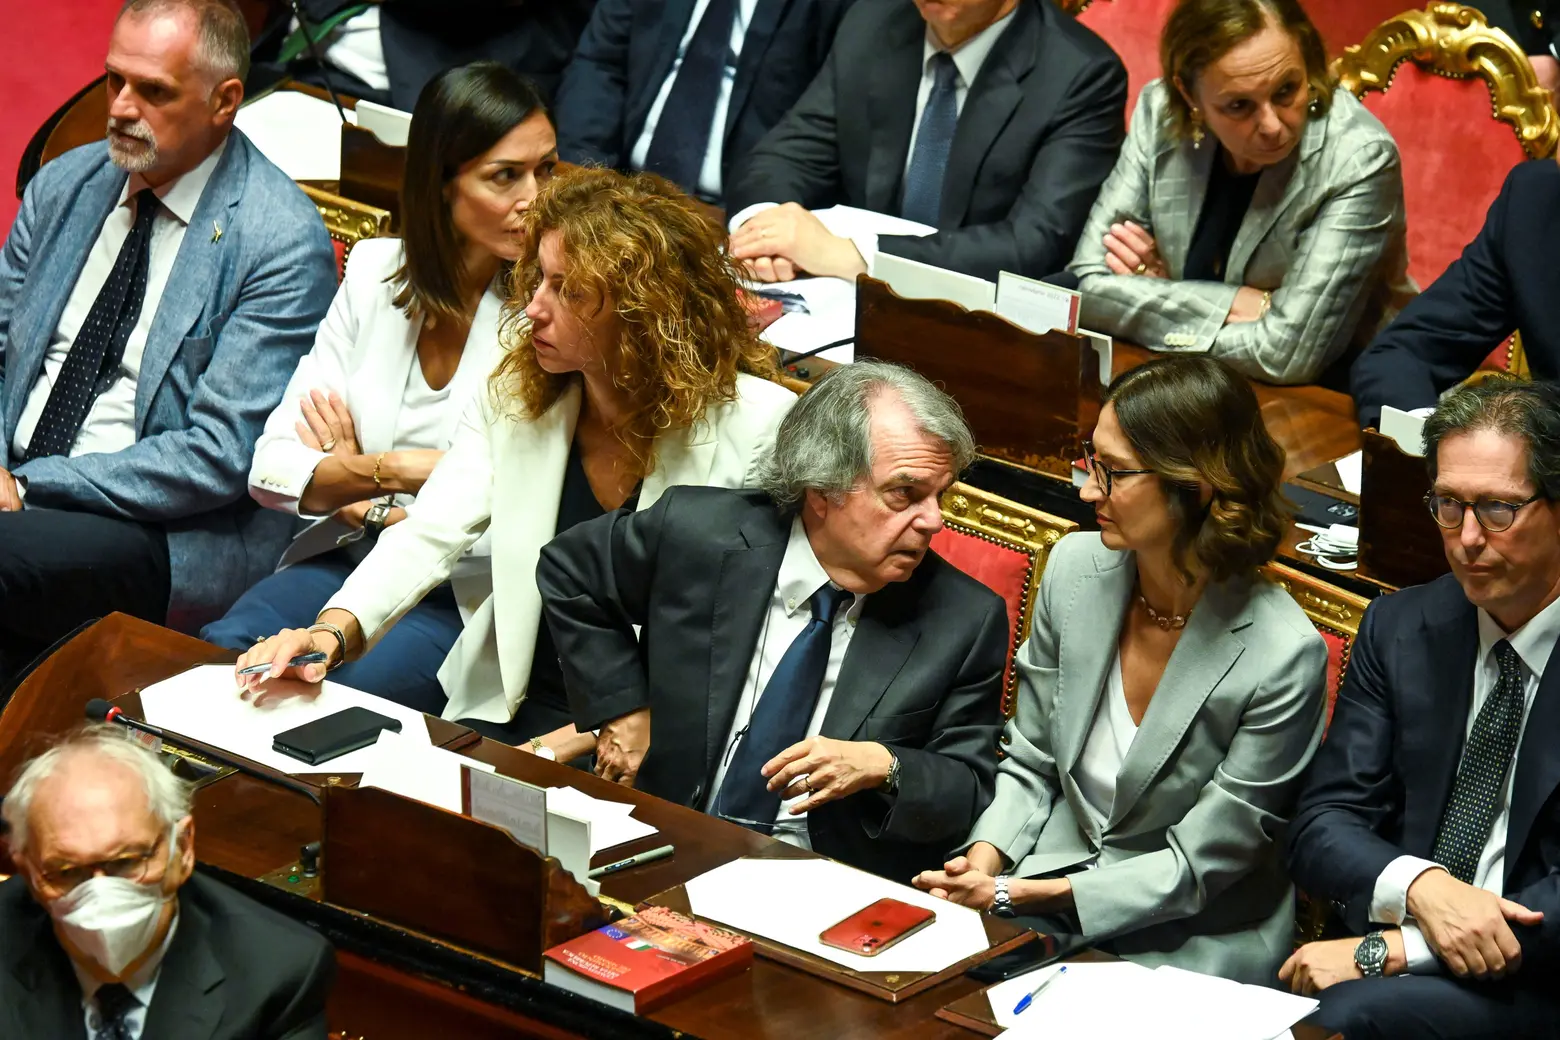 Renato Brunetta e Mariastella Gelmini durante la votazione 